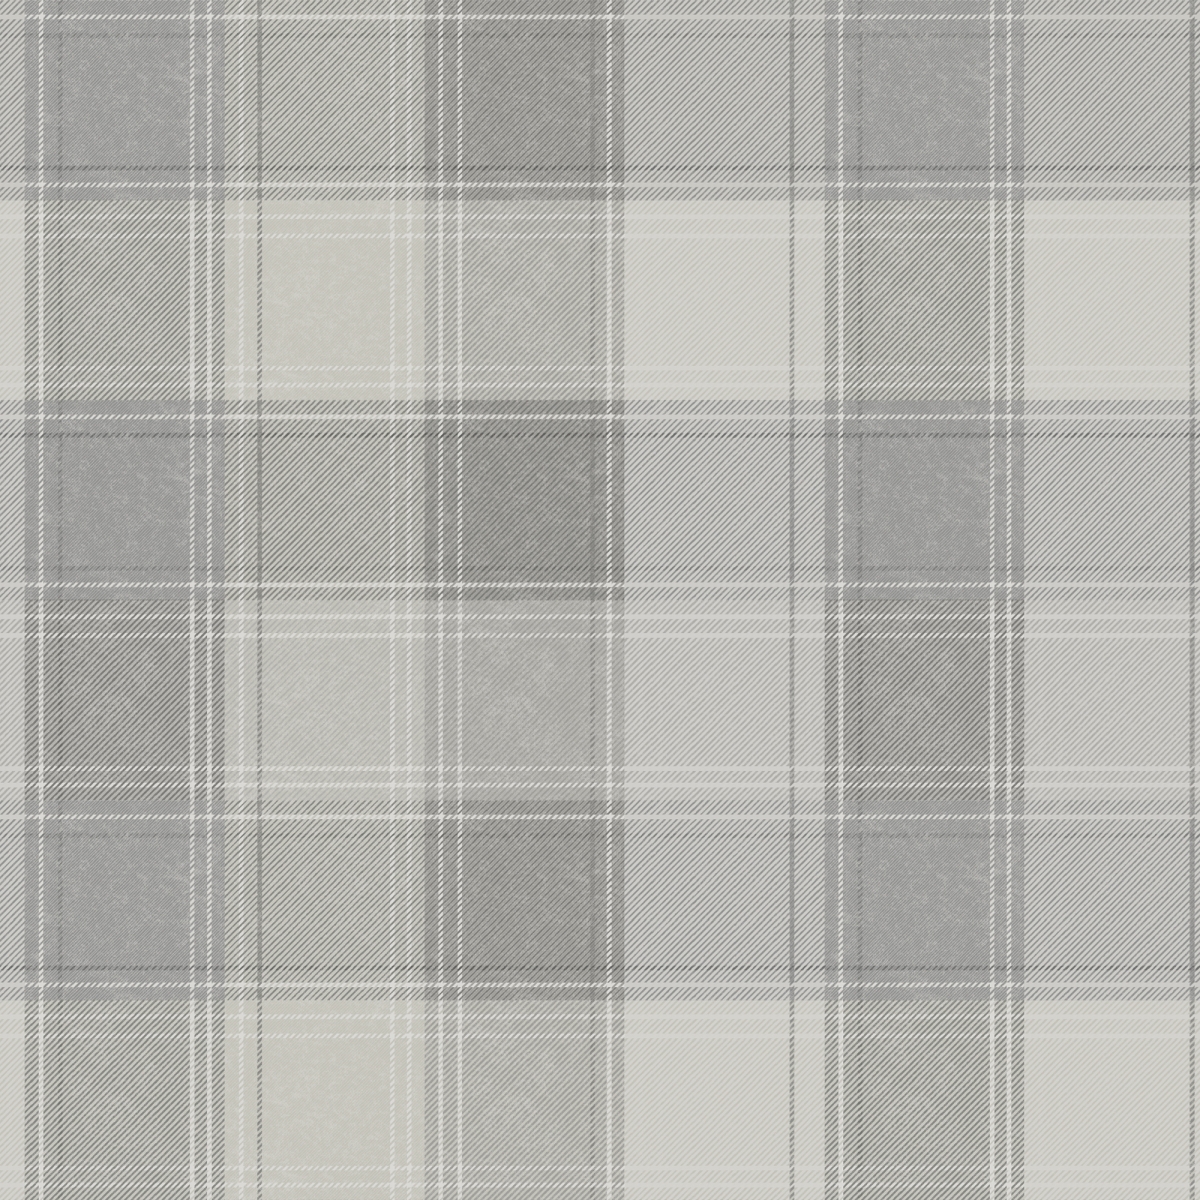 904101 Urban Check Non-woven Wallpaper, Grey